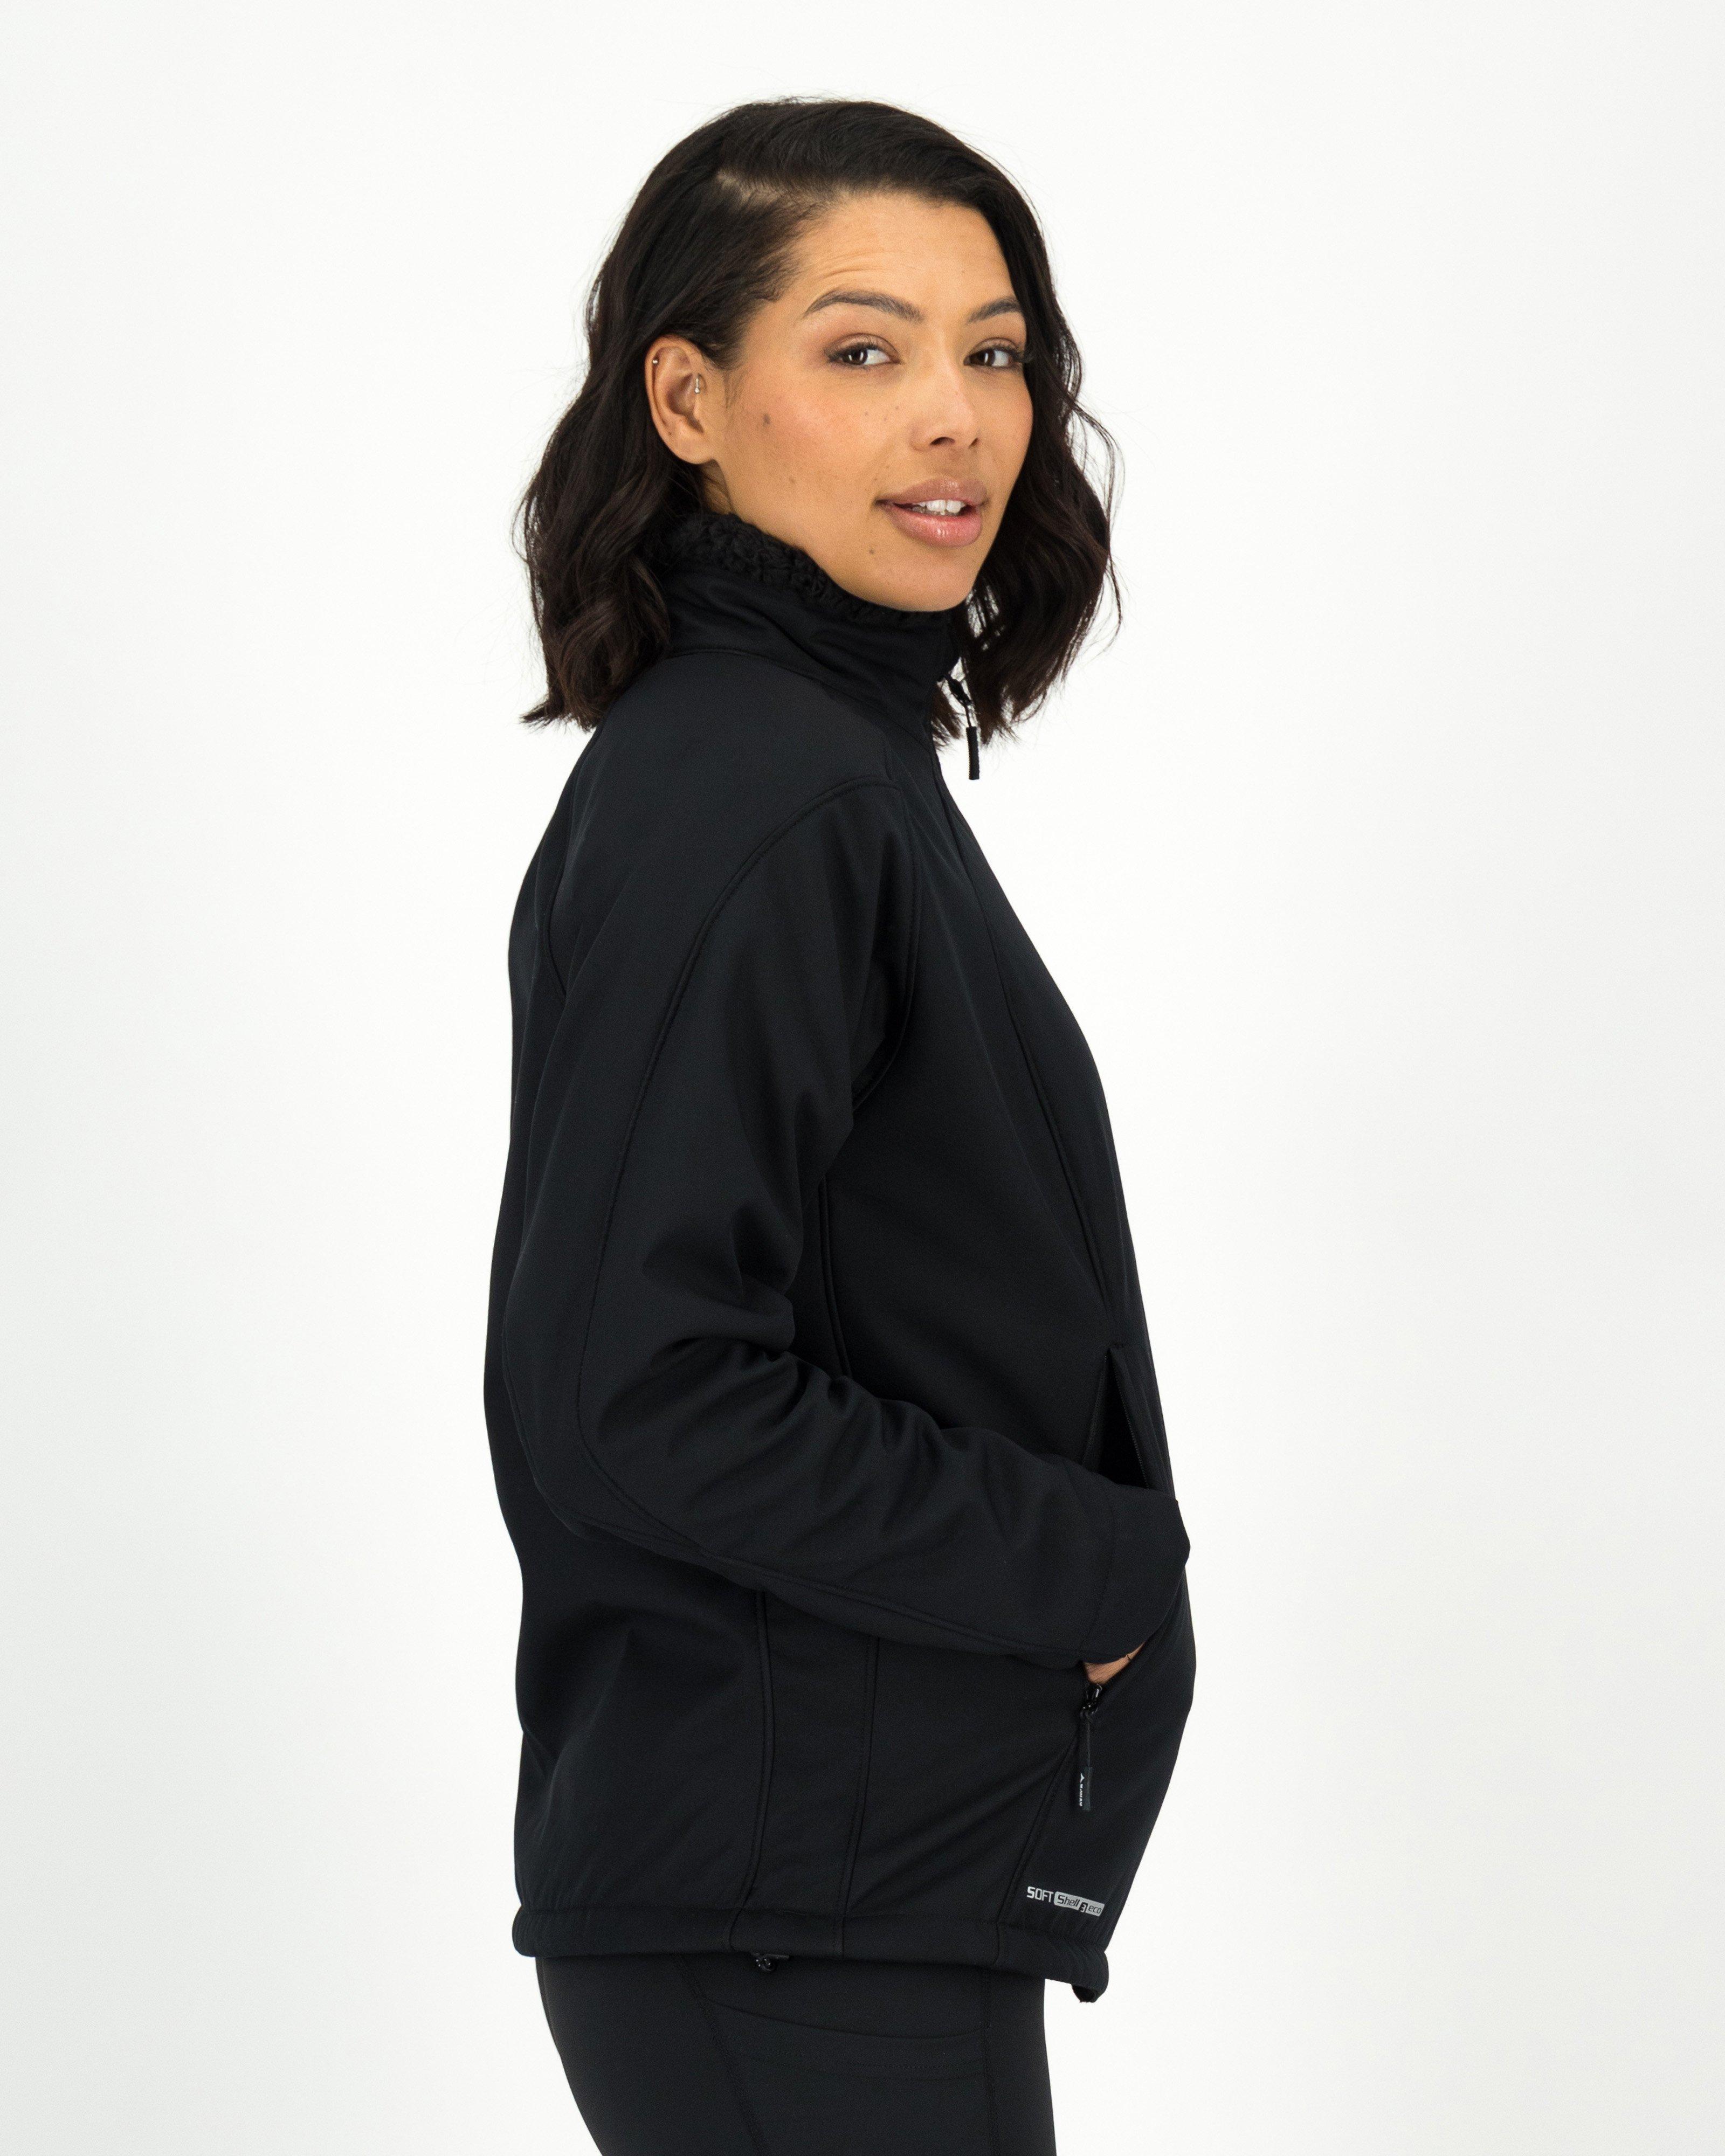 K-Way Women's Tianna Eco Softshell Jacket -  Black